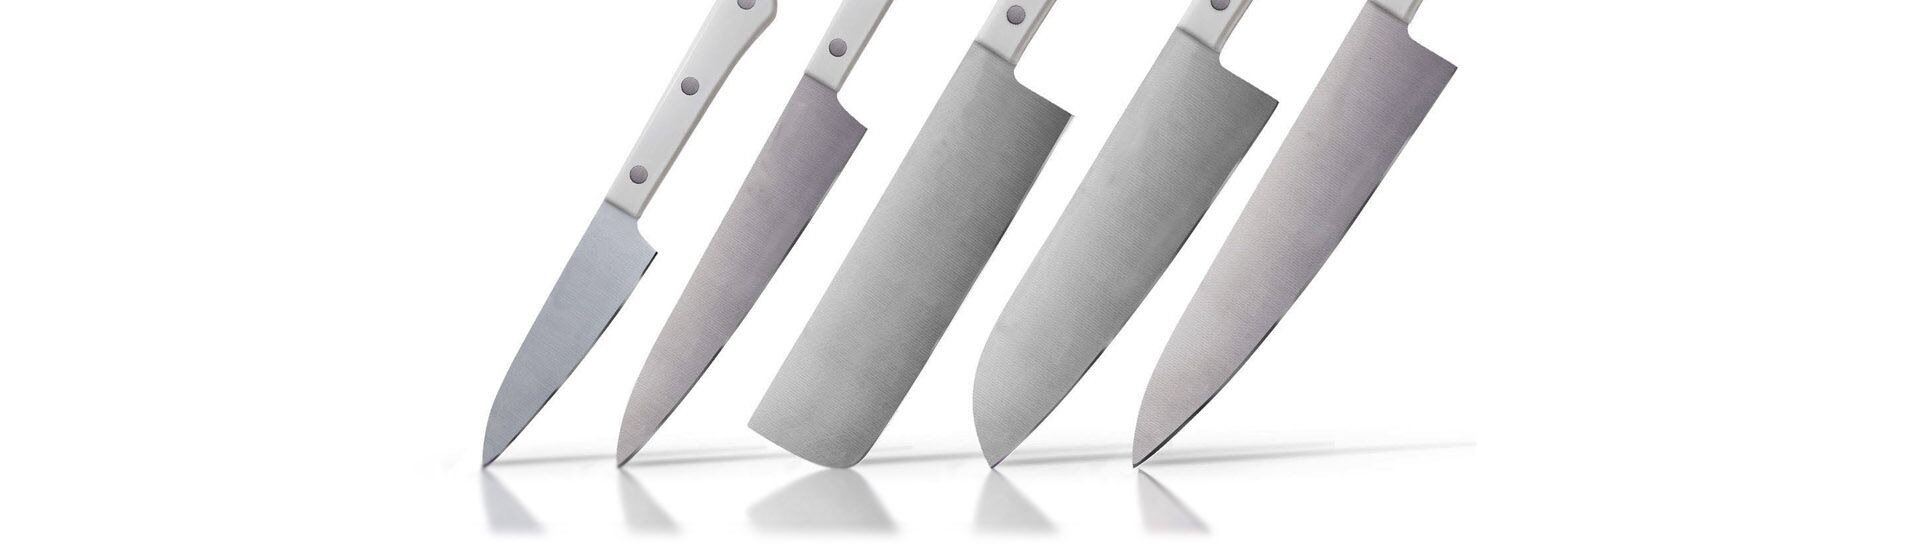 Преимущества и недостатки керамических ножей